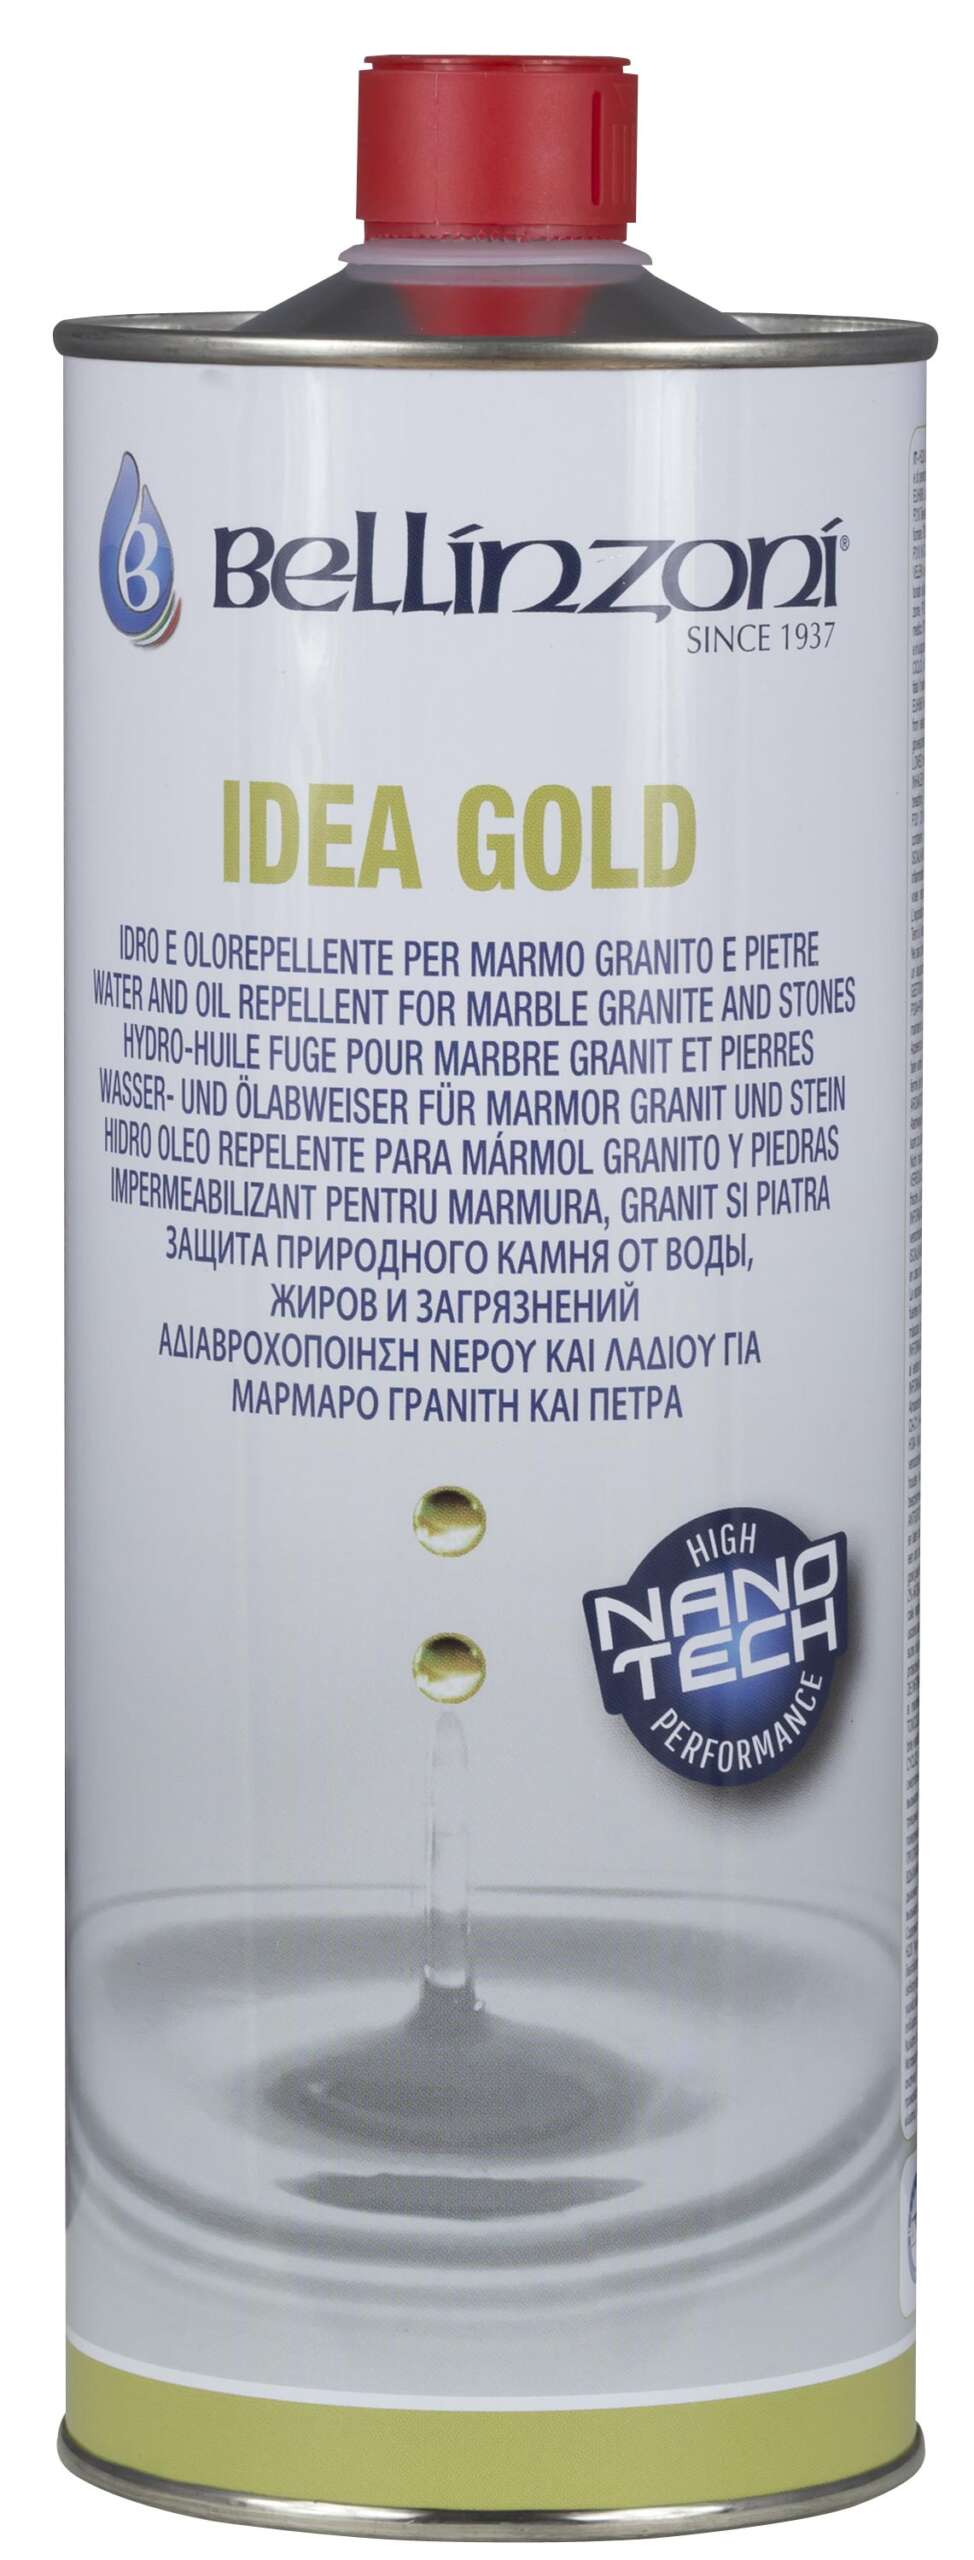 idea gold